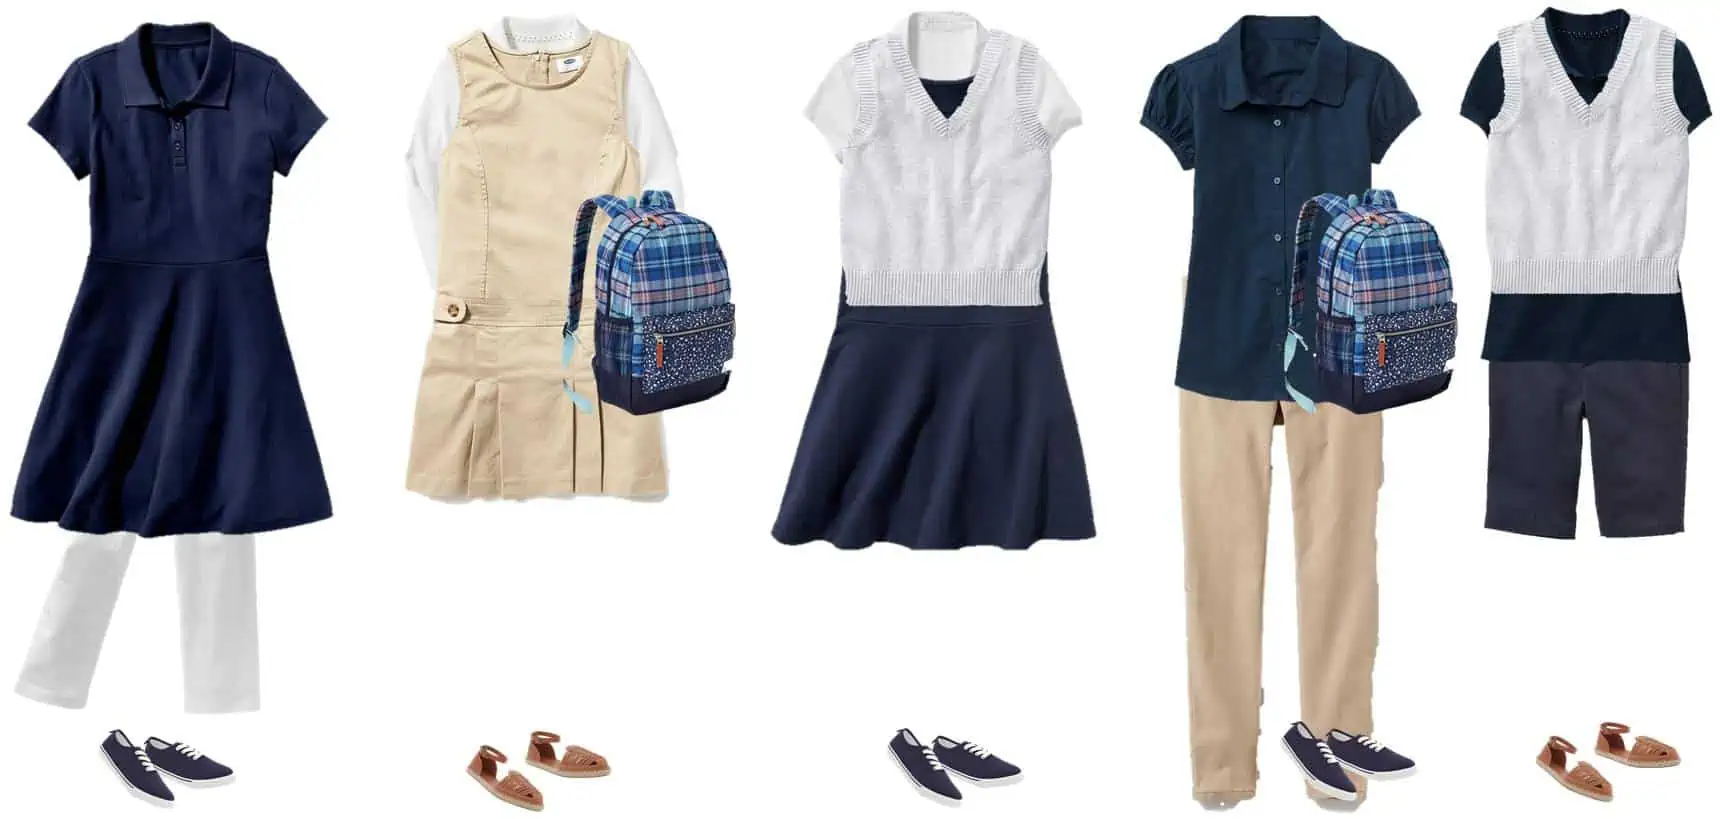 Mix & Match School Uniforms for Girls